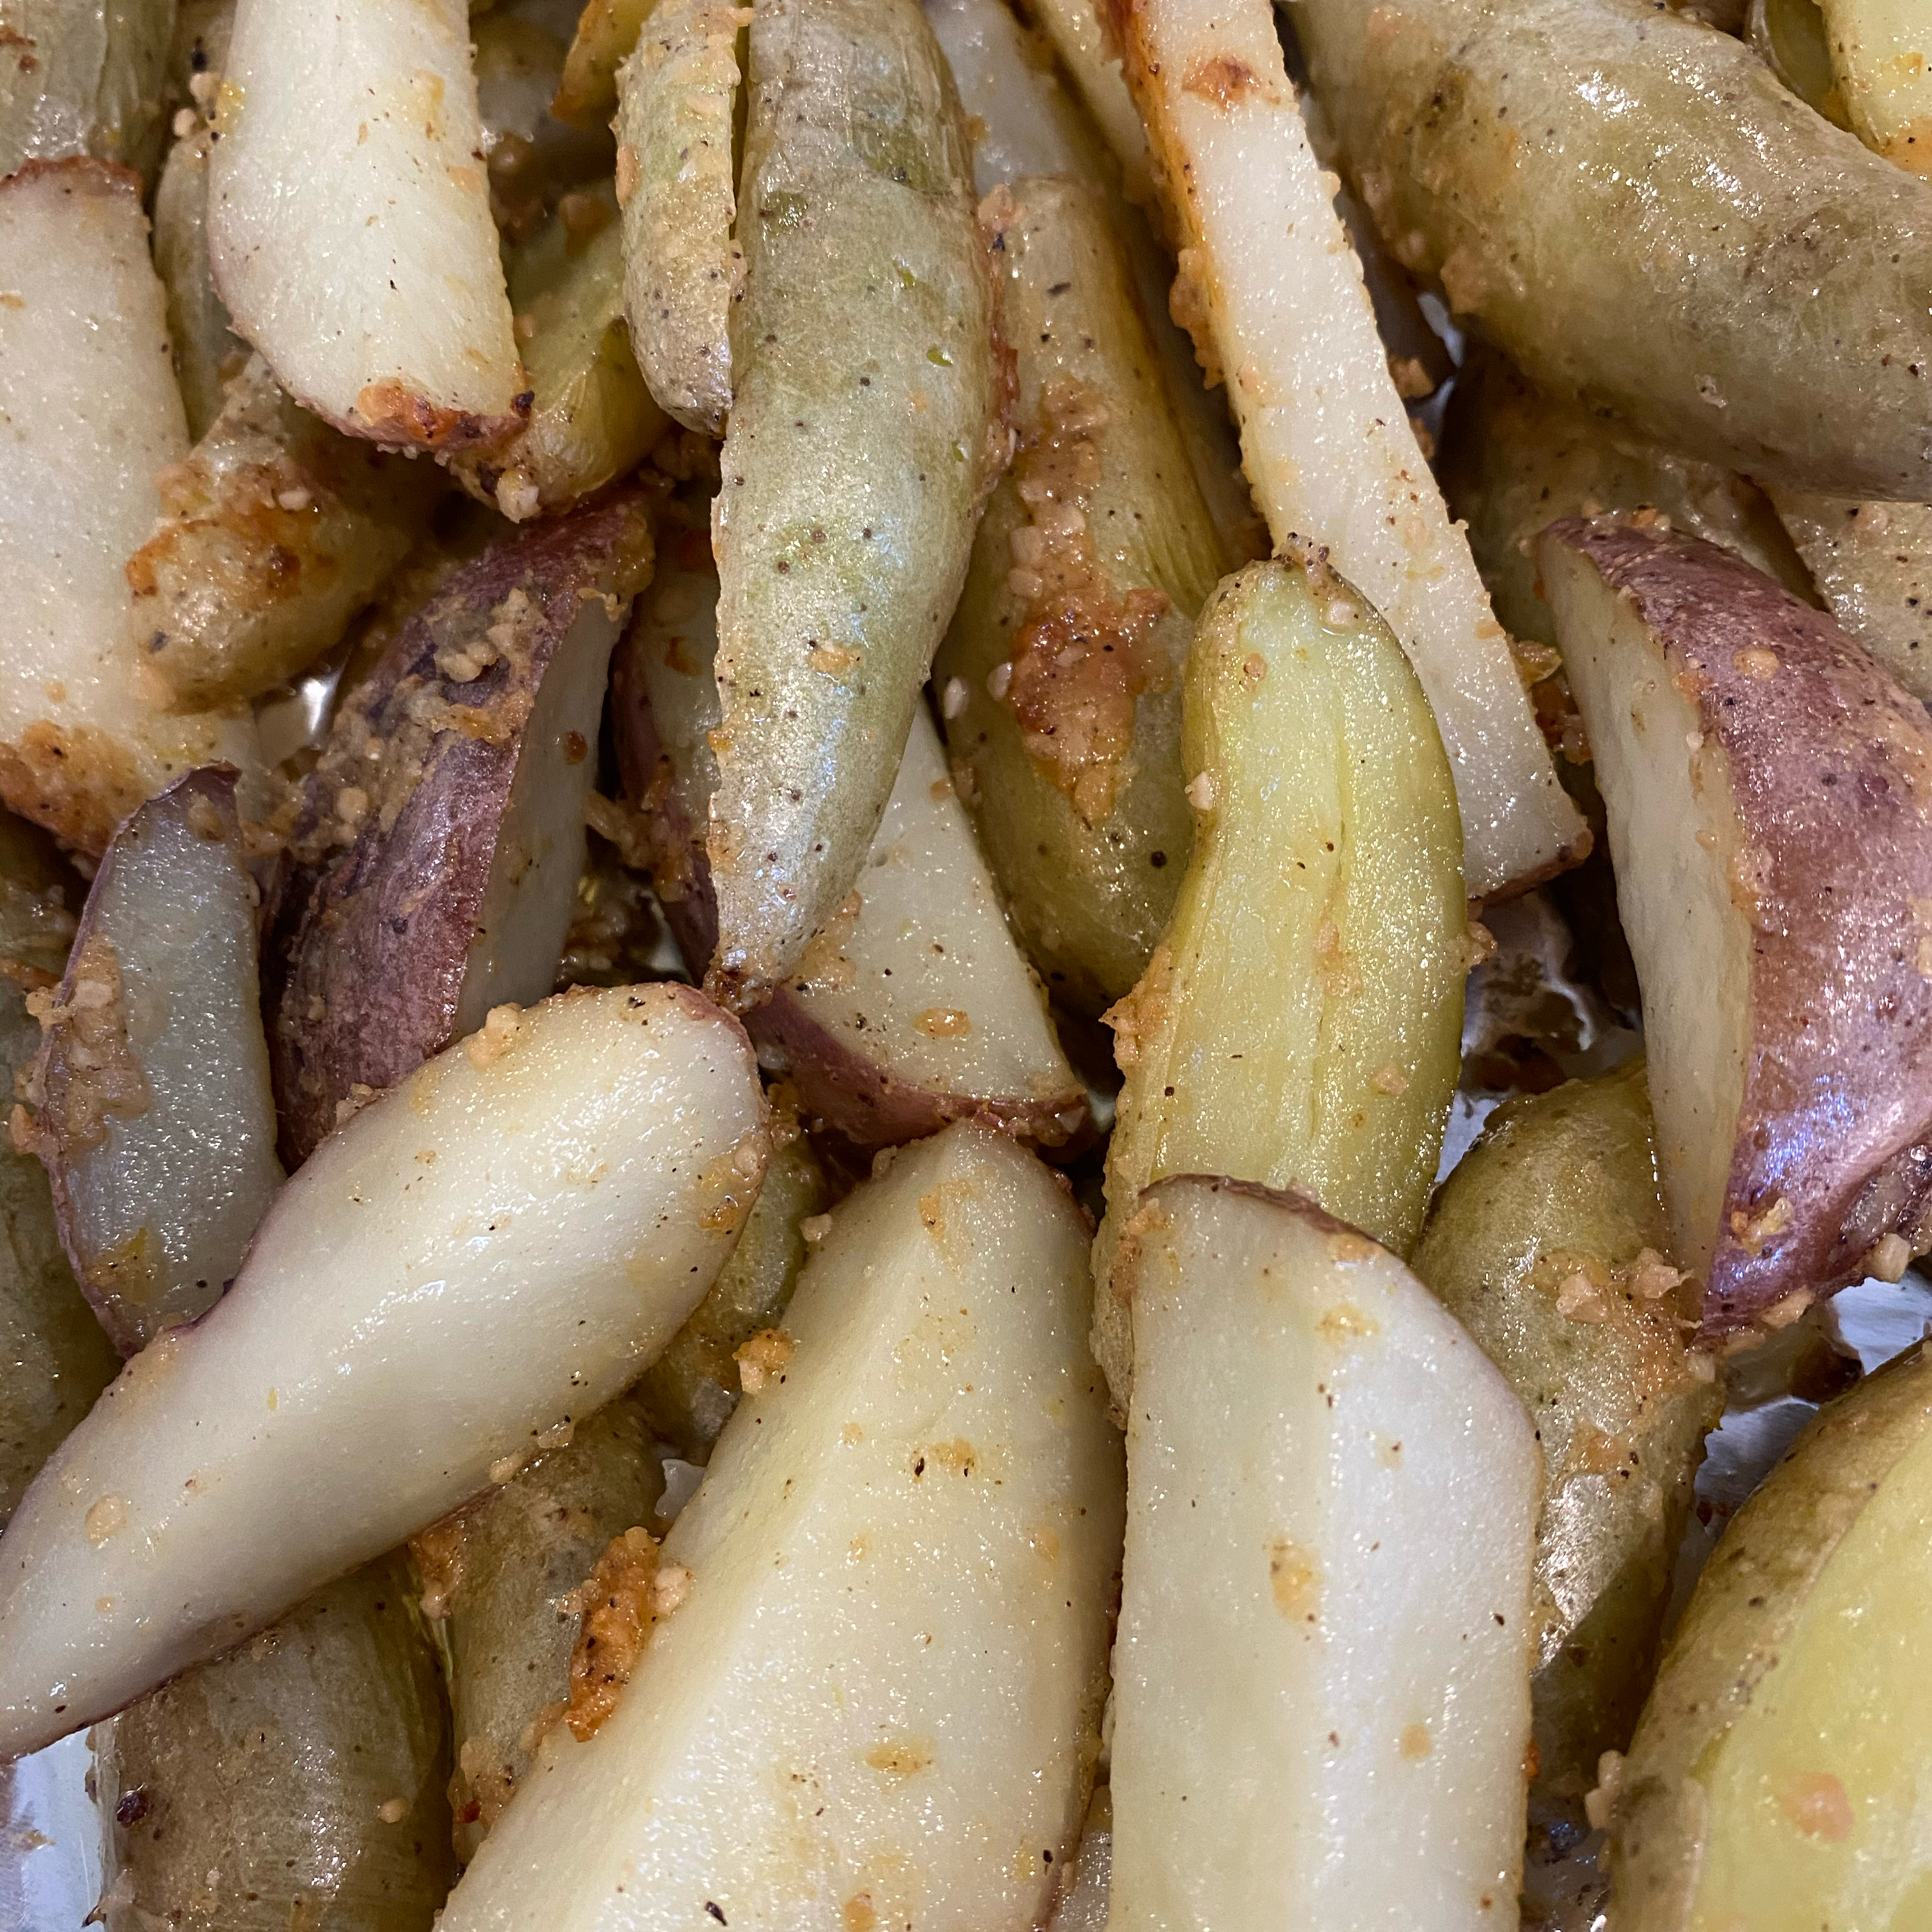 Roasted Garlic-Parmesan Fingerling Potatoes 